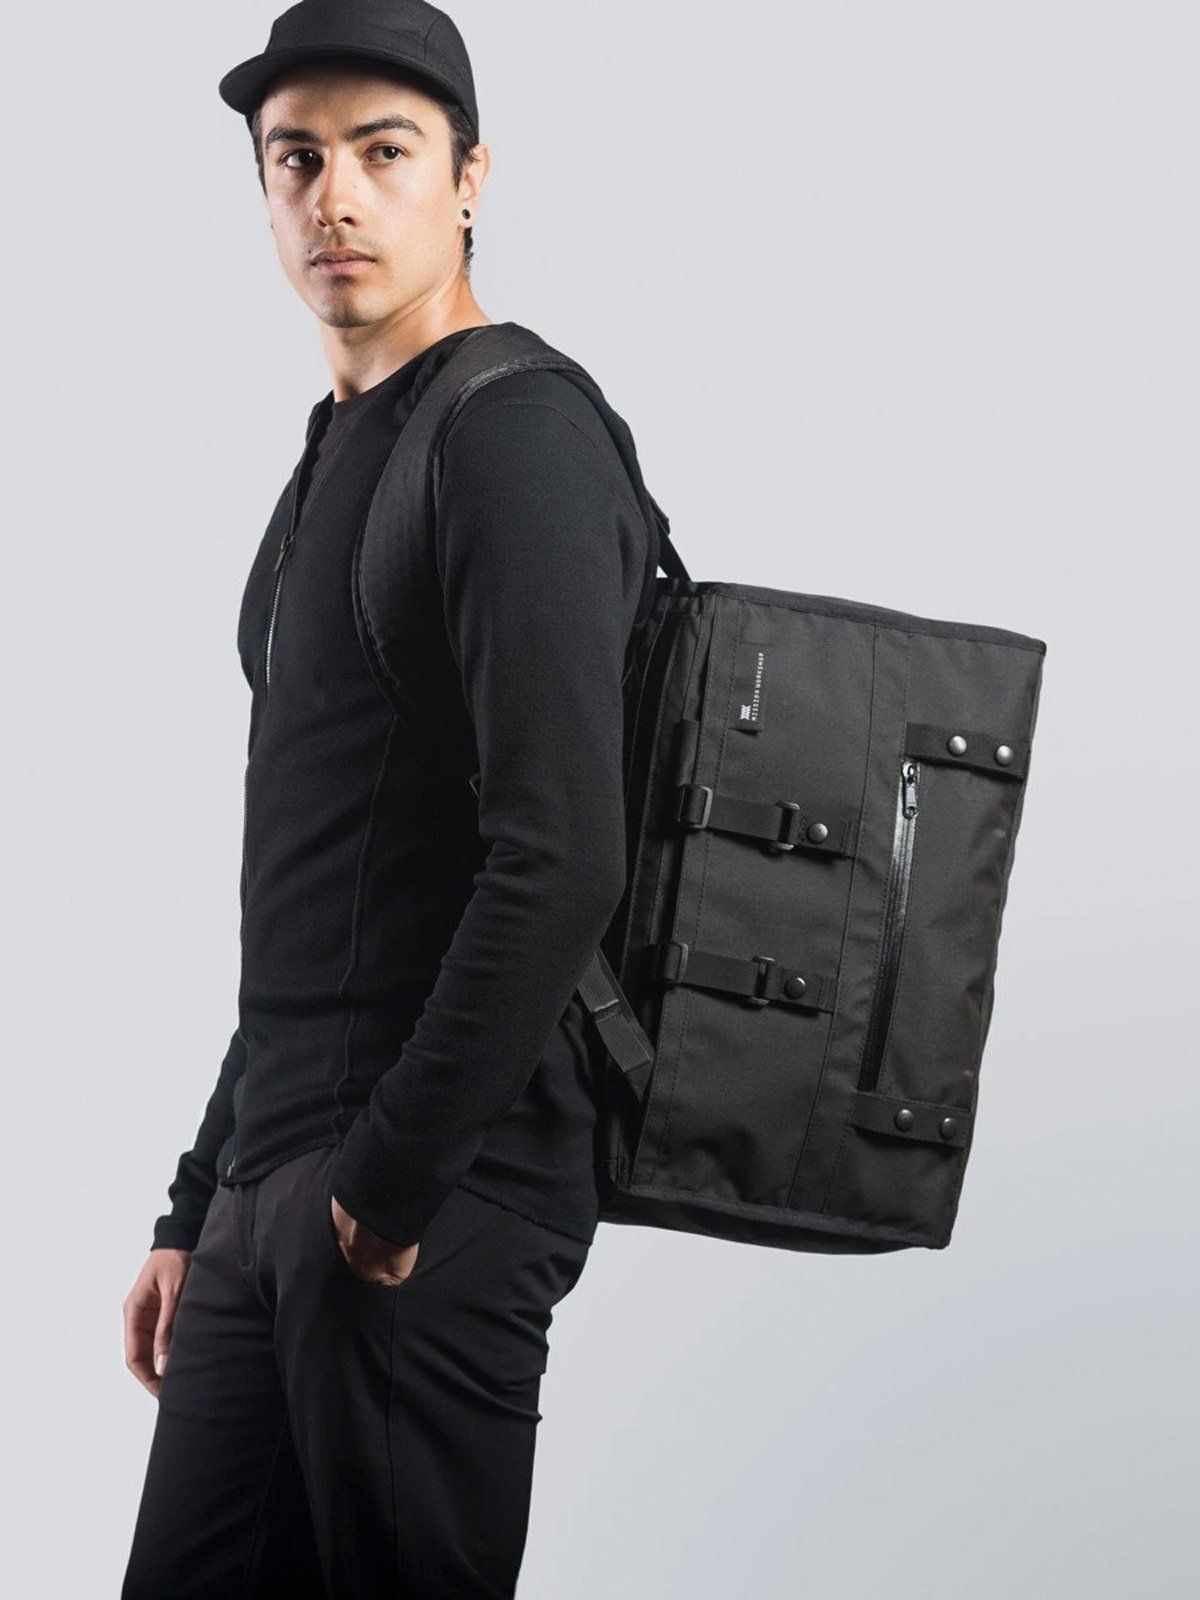 Transit : Duffle Backpack Harness by Mission Workshop - Bolsas resistentes a la intemperie y ropa técnica - San Francisco y Los Angeles - Construido para resistir - Garantizado para siempre